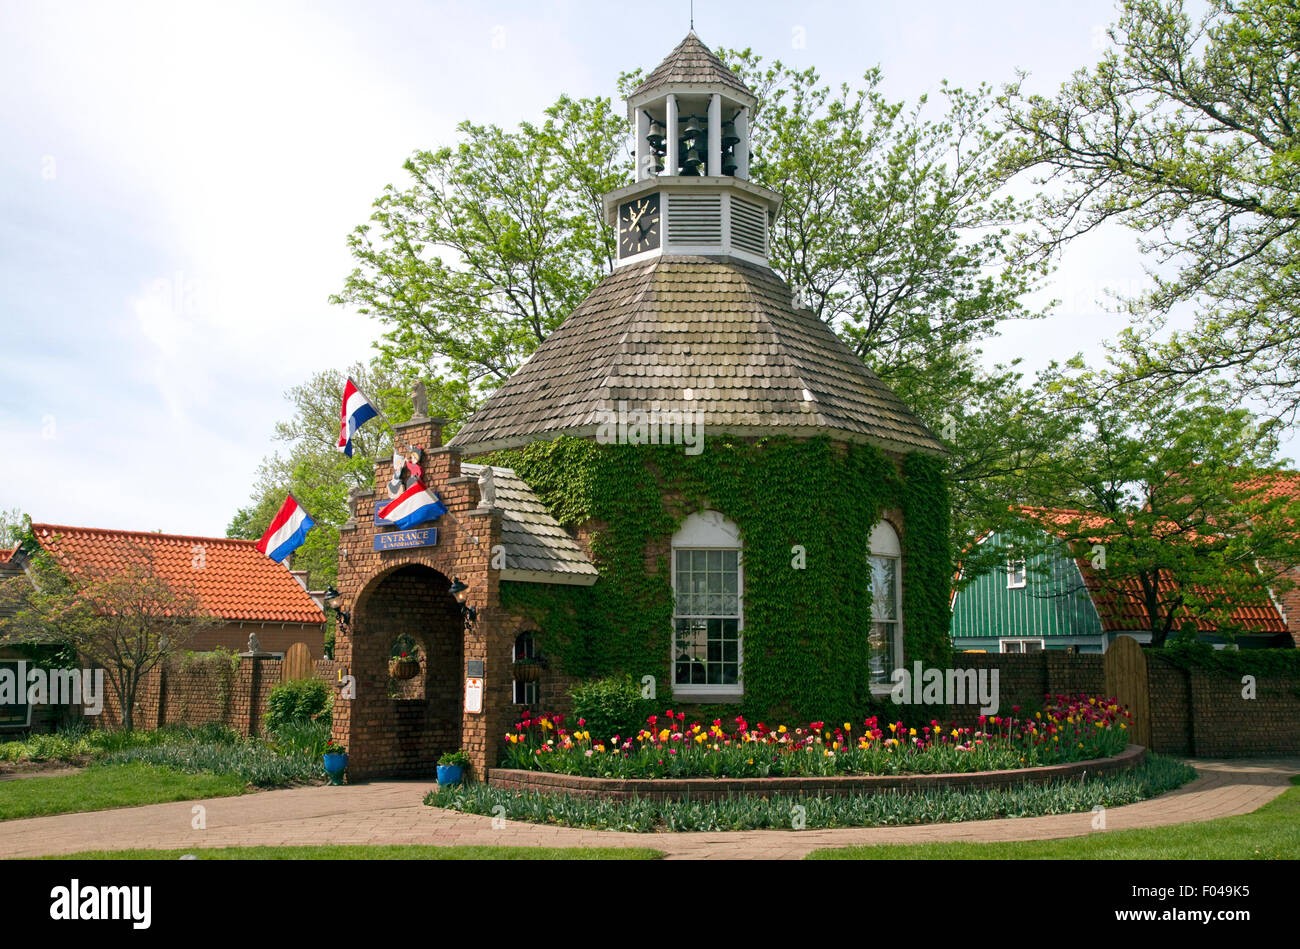 Entrée principale du village néerlandais situé à Holland, Michigan, États-Unis. Banque D'Images